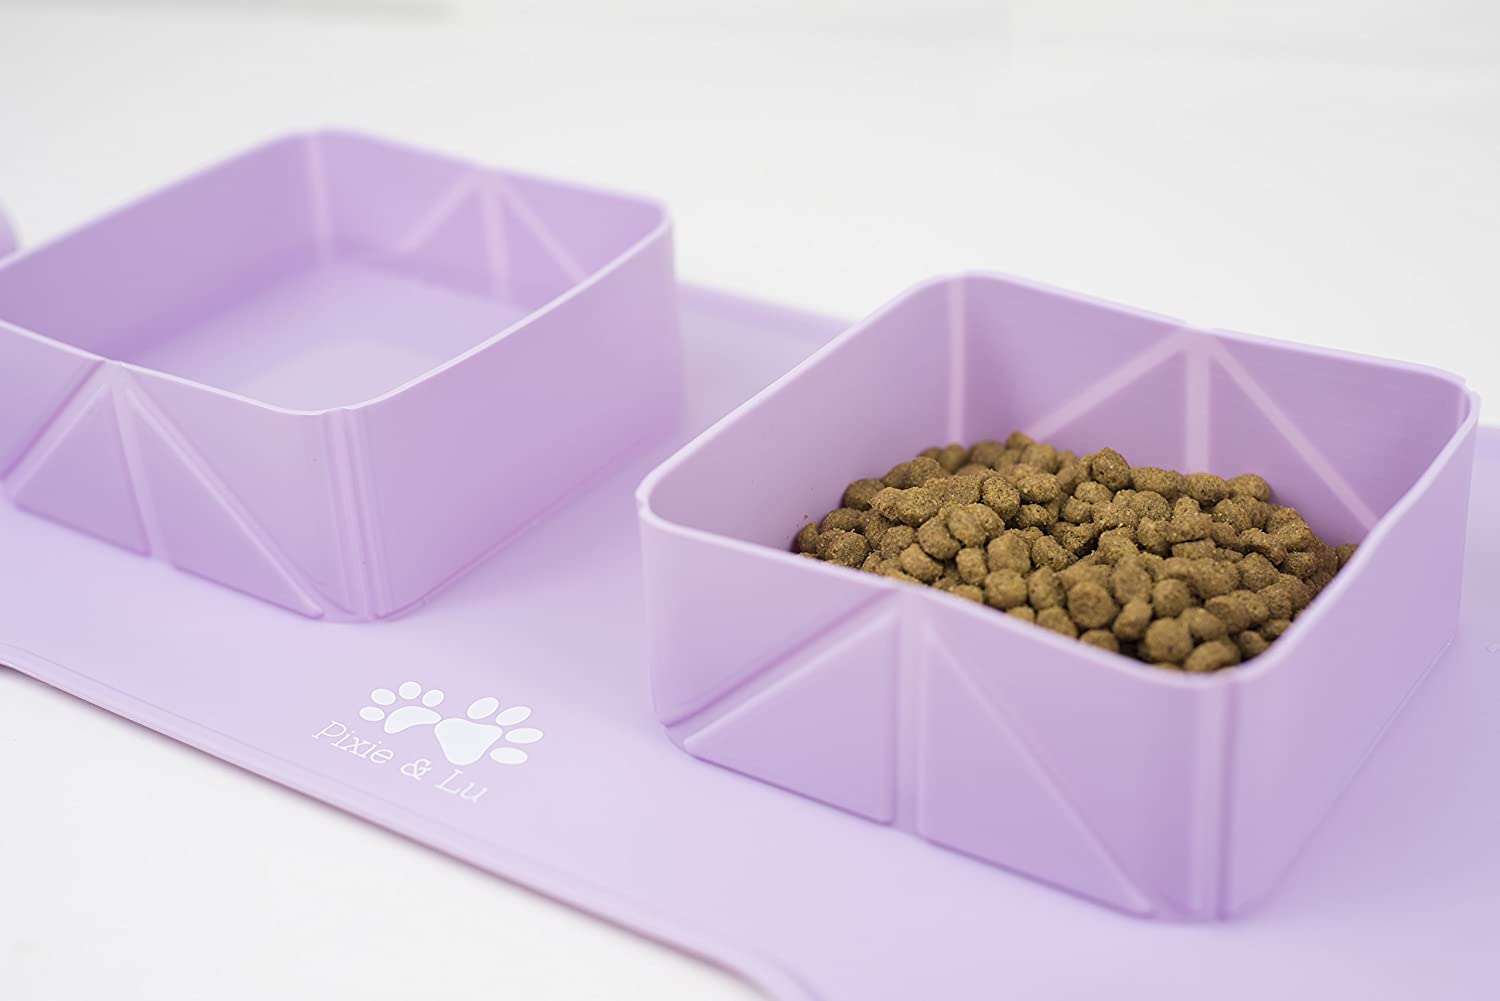  Pixie & Lu Alfombrilla para Alimentos para Mascotas, Tapete Comer de Alimentacion Silicona Impermeable Antideslizante, Comedero y Bebedero Portátil para Perros y Gatos con Bolsa de Viaje 